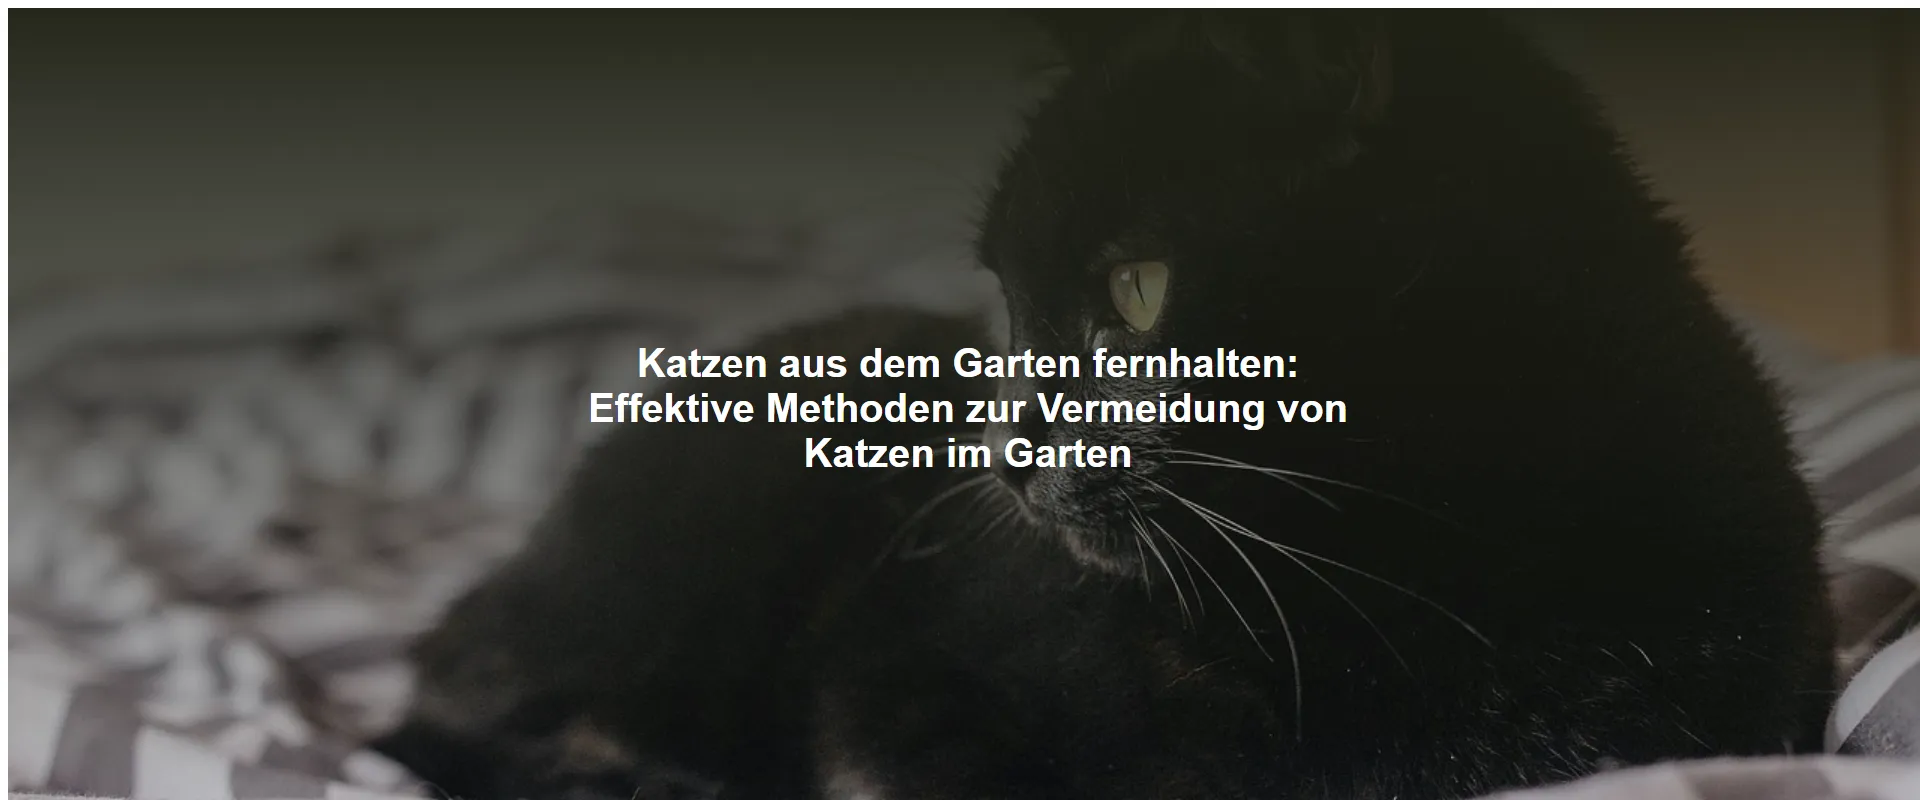 Katzen aus dem Garten fernhalten – Effektive Methoden zur Vermeidung von Katzen im Garten